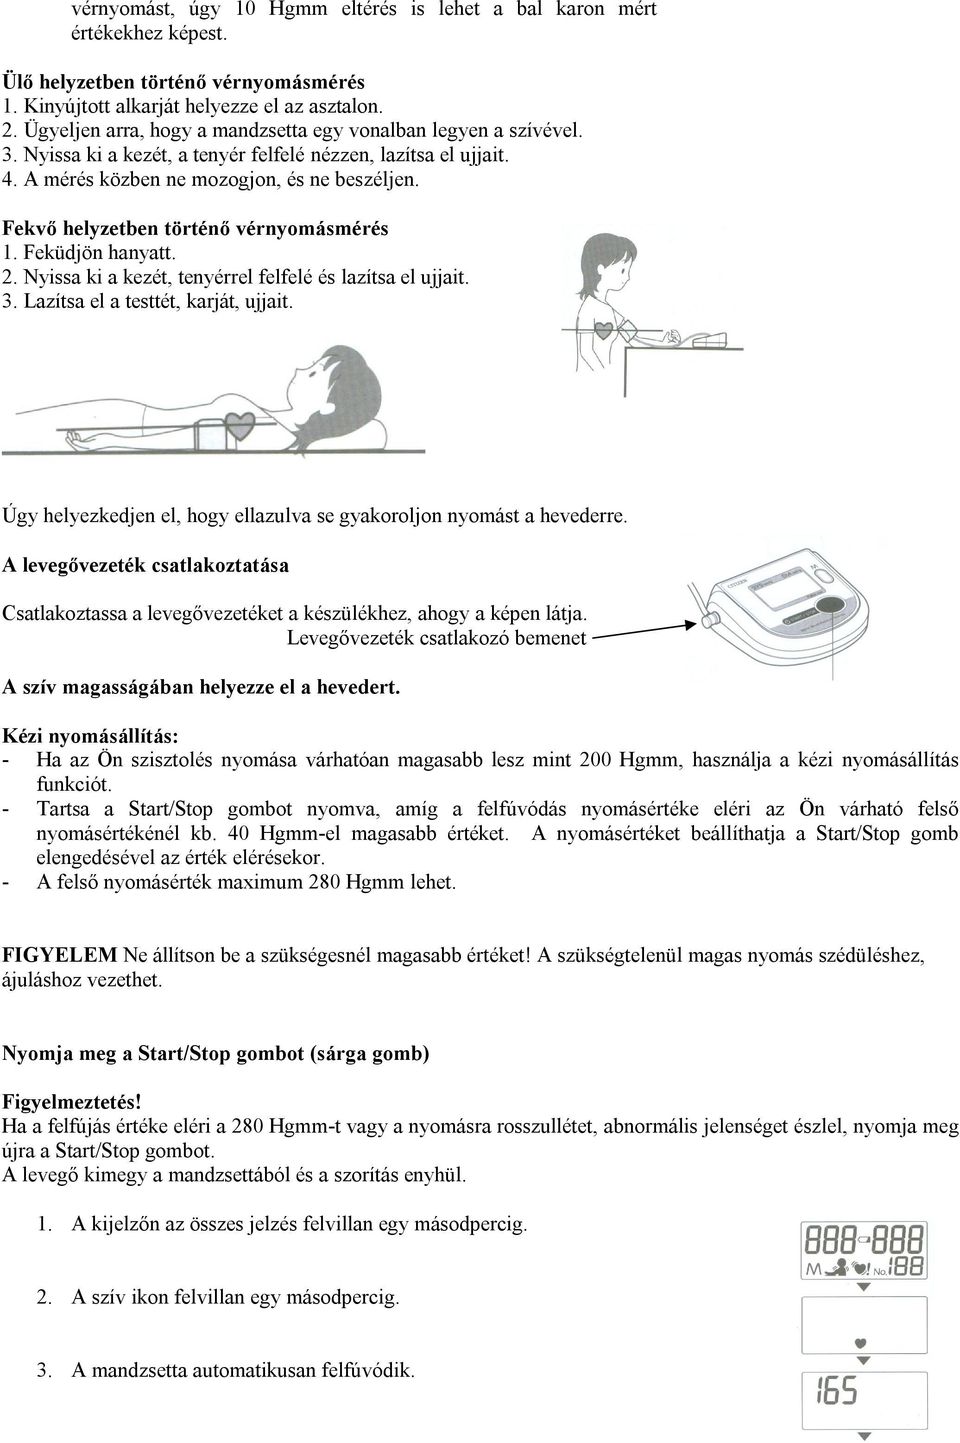 CITIZEN. Digitális, automata felkaros vérnyomásmérő készülék GYCH-453  HASZNÁLATI UTASÍTÁS - PDF Ingyenes letöltés